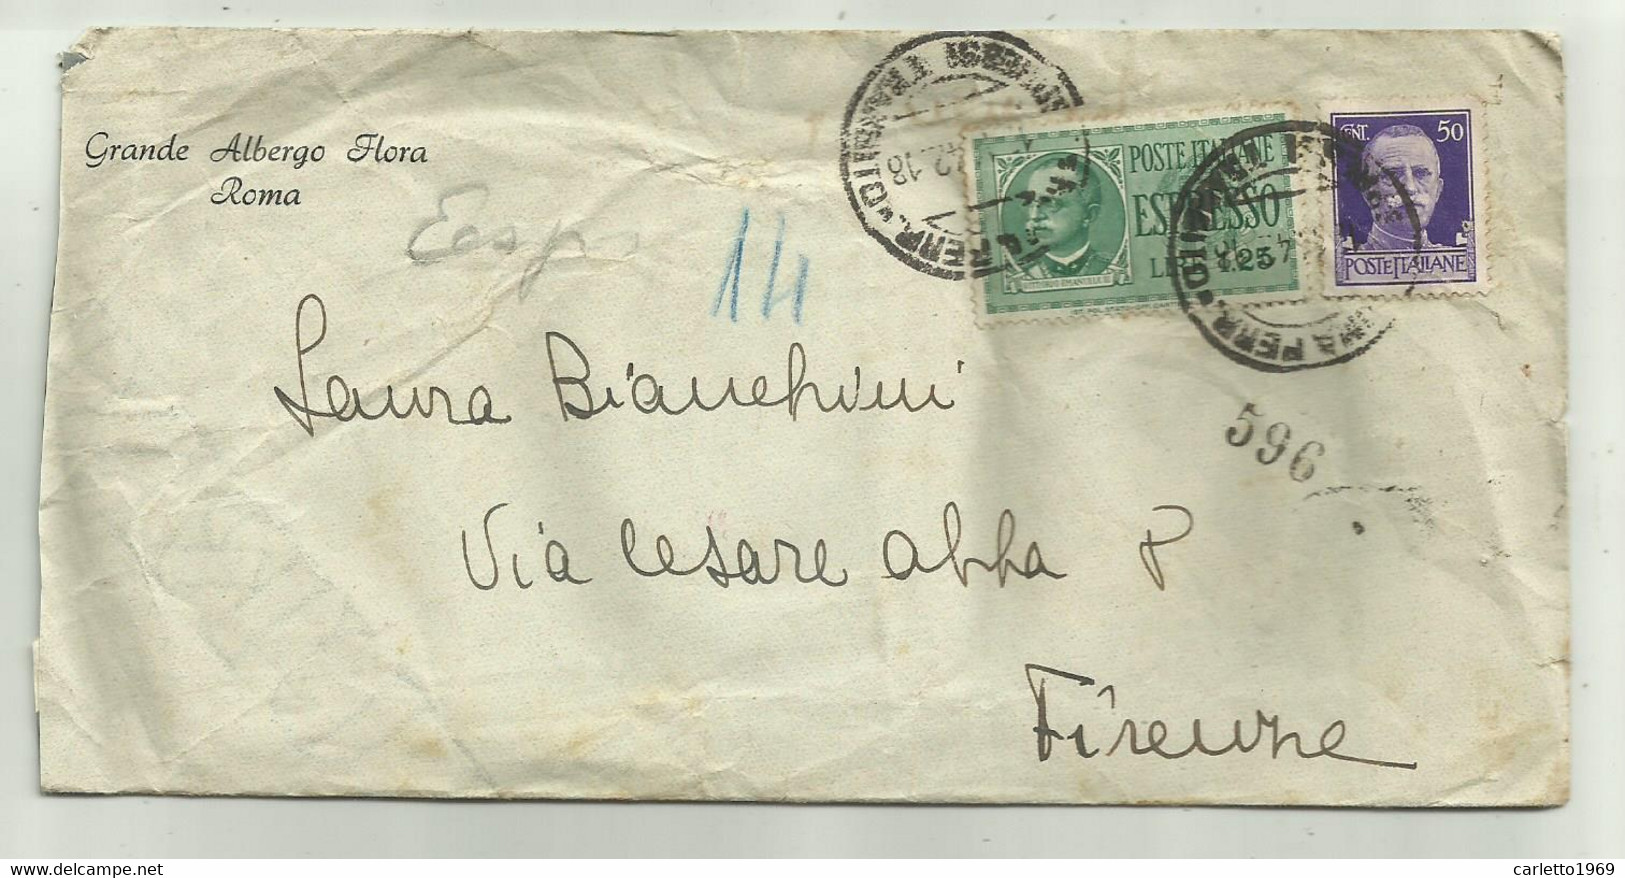 ESPRESSO LIRE 1,25 + CENT. 50 SU BUSTA GRANDE ALBERGO FLORA ROMA 1942 - Oblitérés